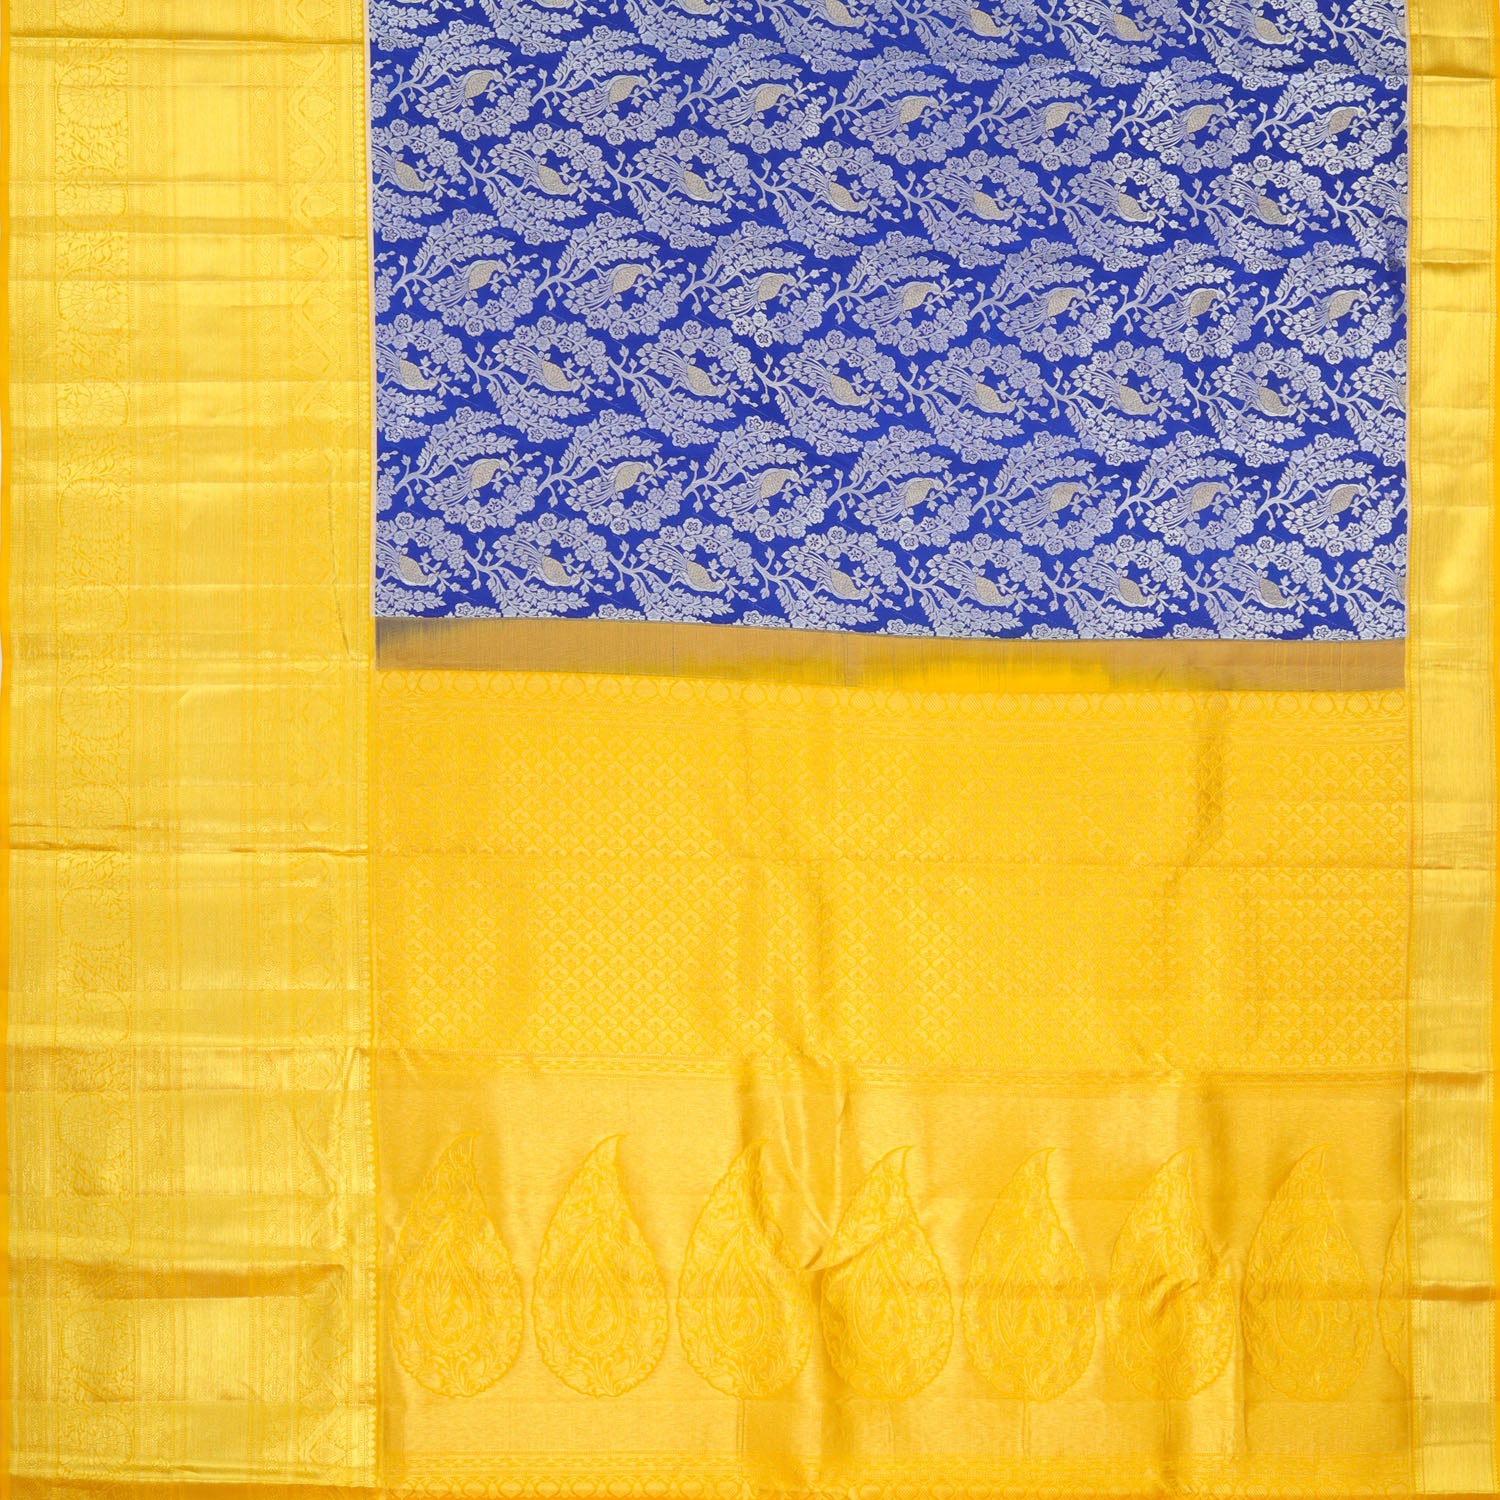 Cobalt Blue Kanjivaram Silk Saree With Floral And Bird Motif